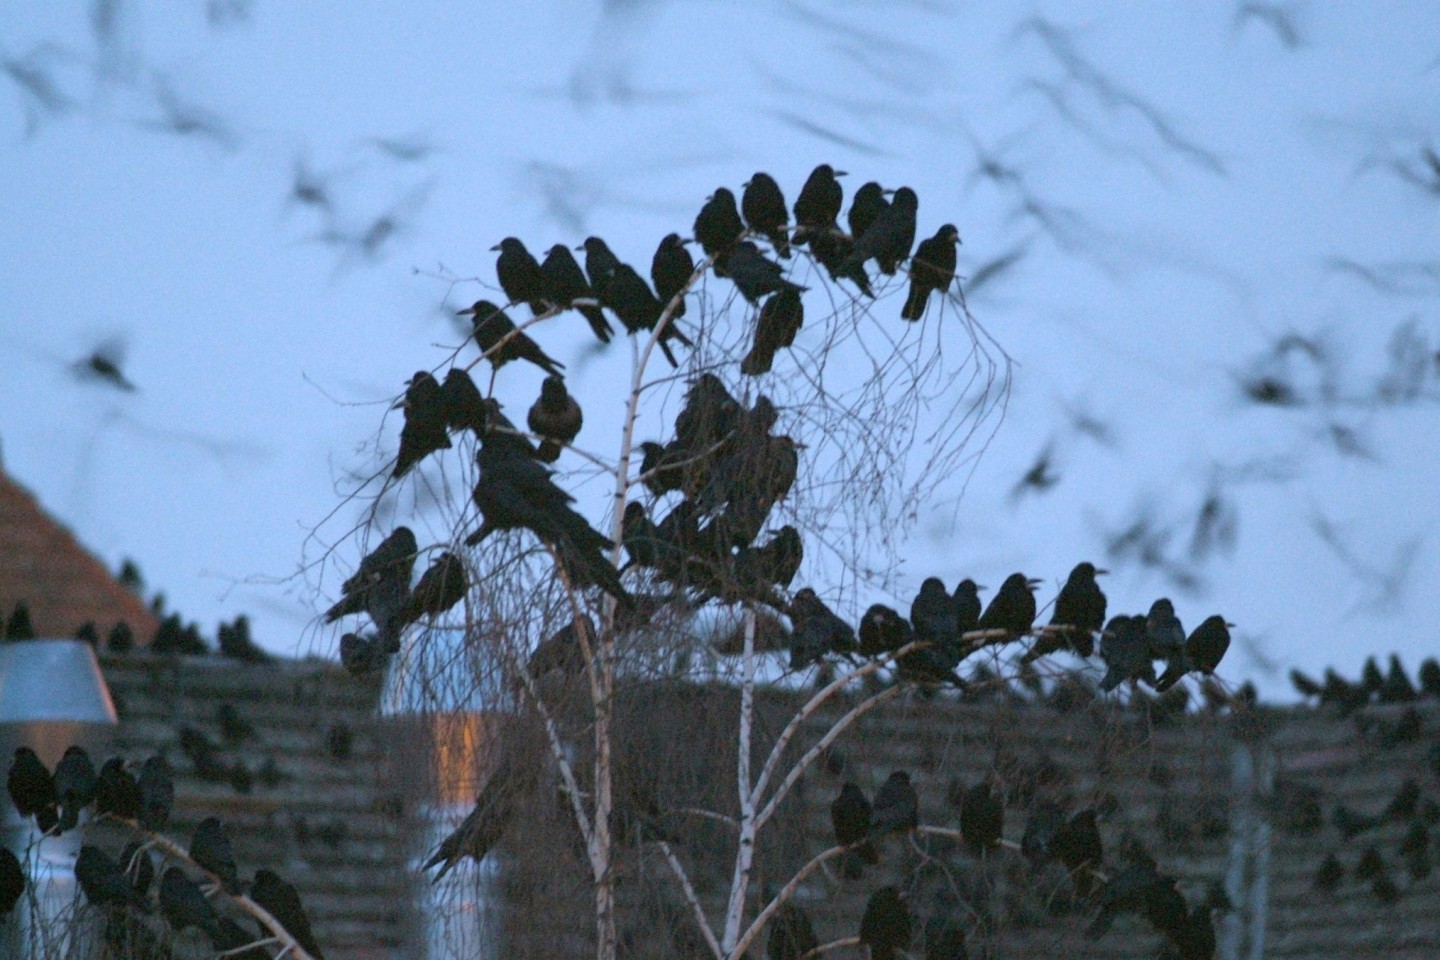 Saatkrähen nisten in großen Kolonien - gern gesehen sind die schwarzen Vogelgruppen zumindest in Norddeutschland nicht.